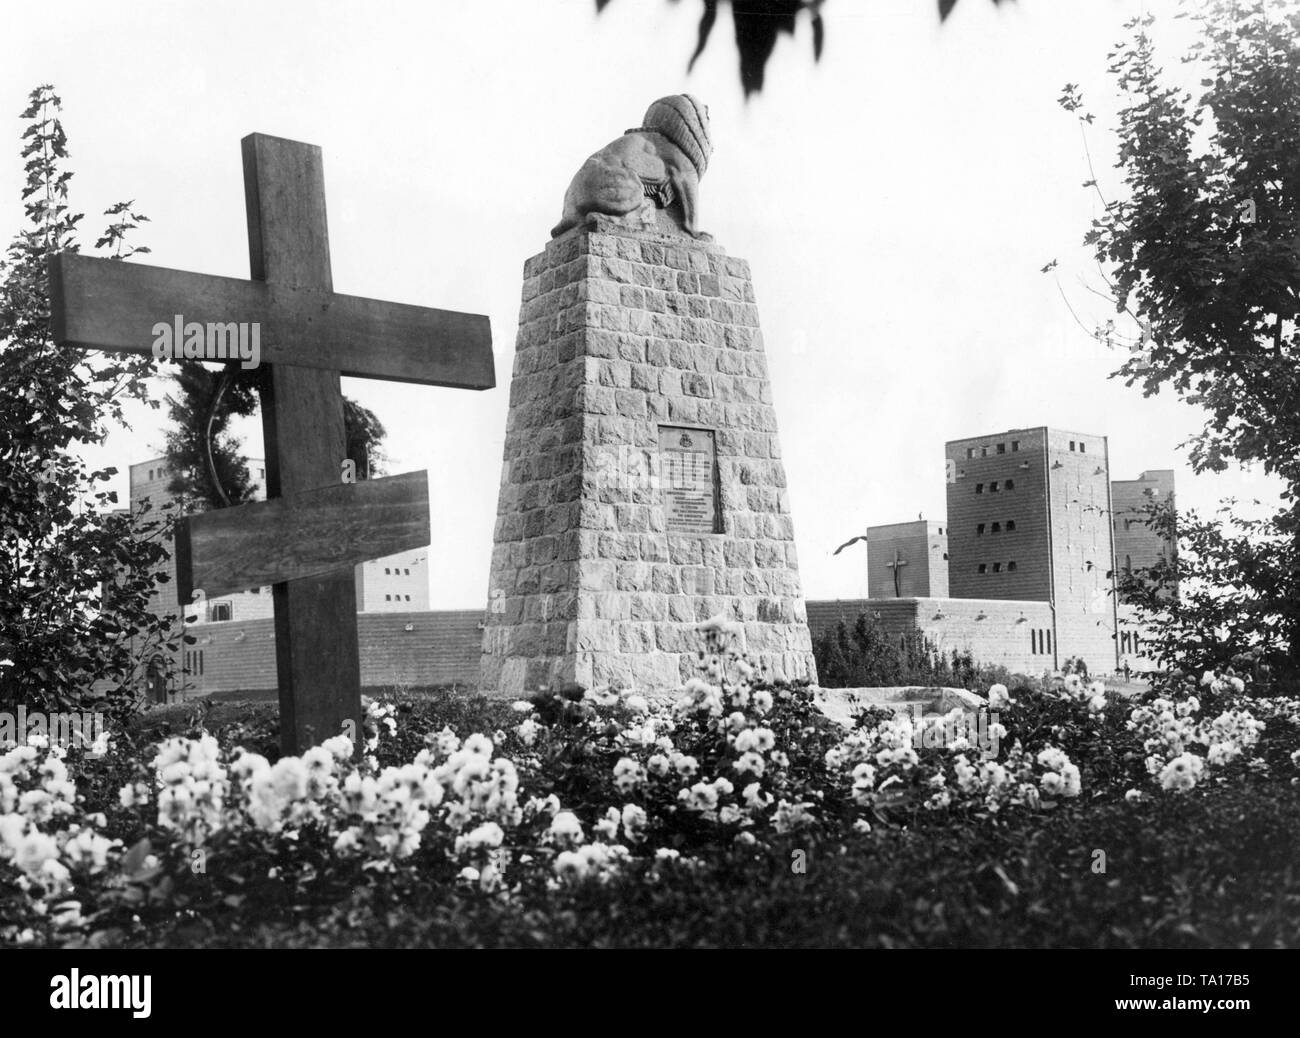 Das Grab von einem russischen Soldaten und ein Denkmal für die Regiment Paul von Hindenburg vor der Tannenberg Memorial in der Nähe von Hohenstein (heute Olsztynek, Polen). Stockfoto